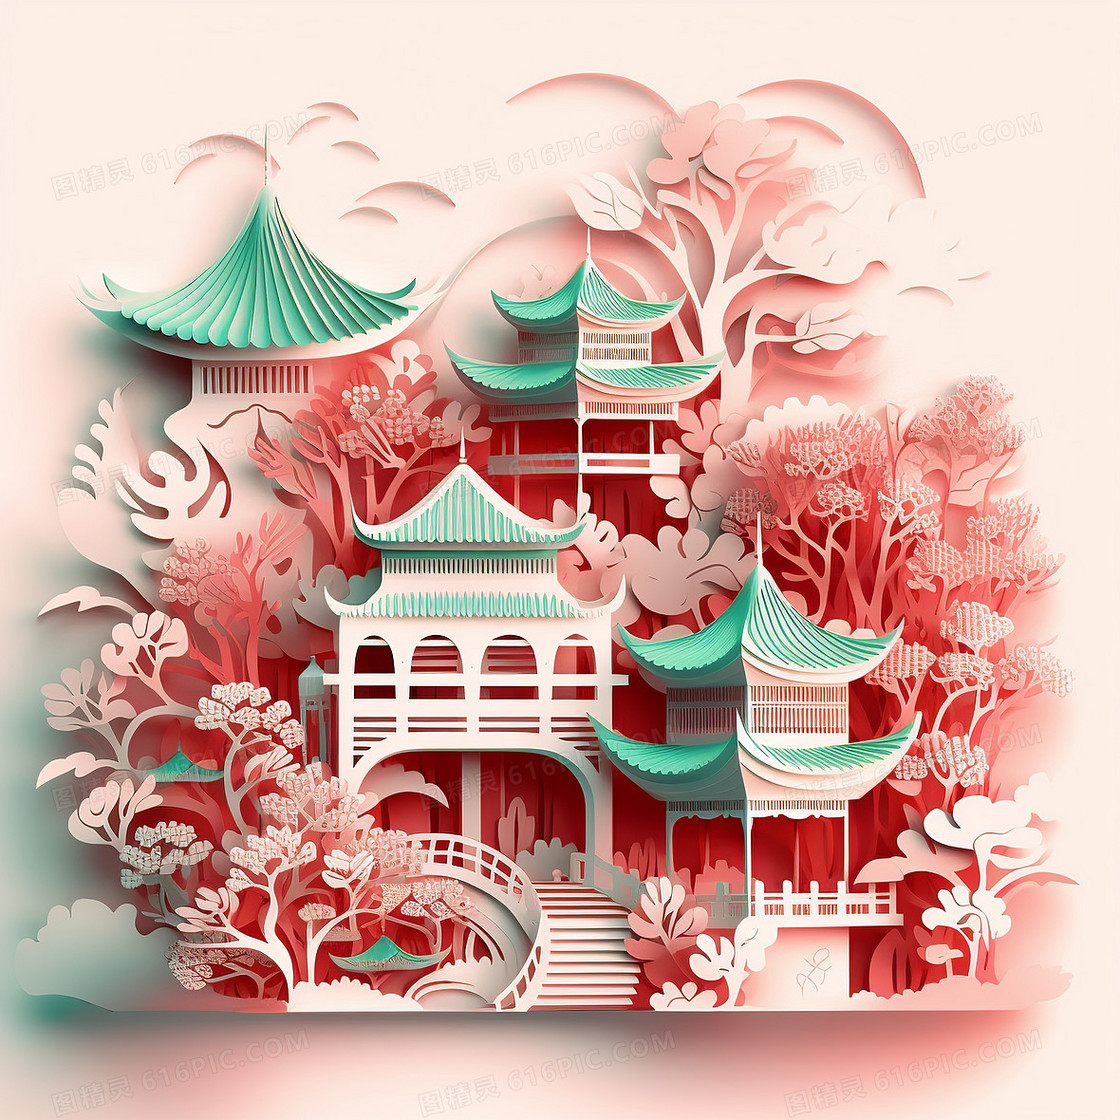 中国风红绿撞色亭台楼阁园林建筑创意剪纸插画